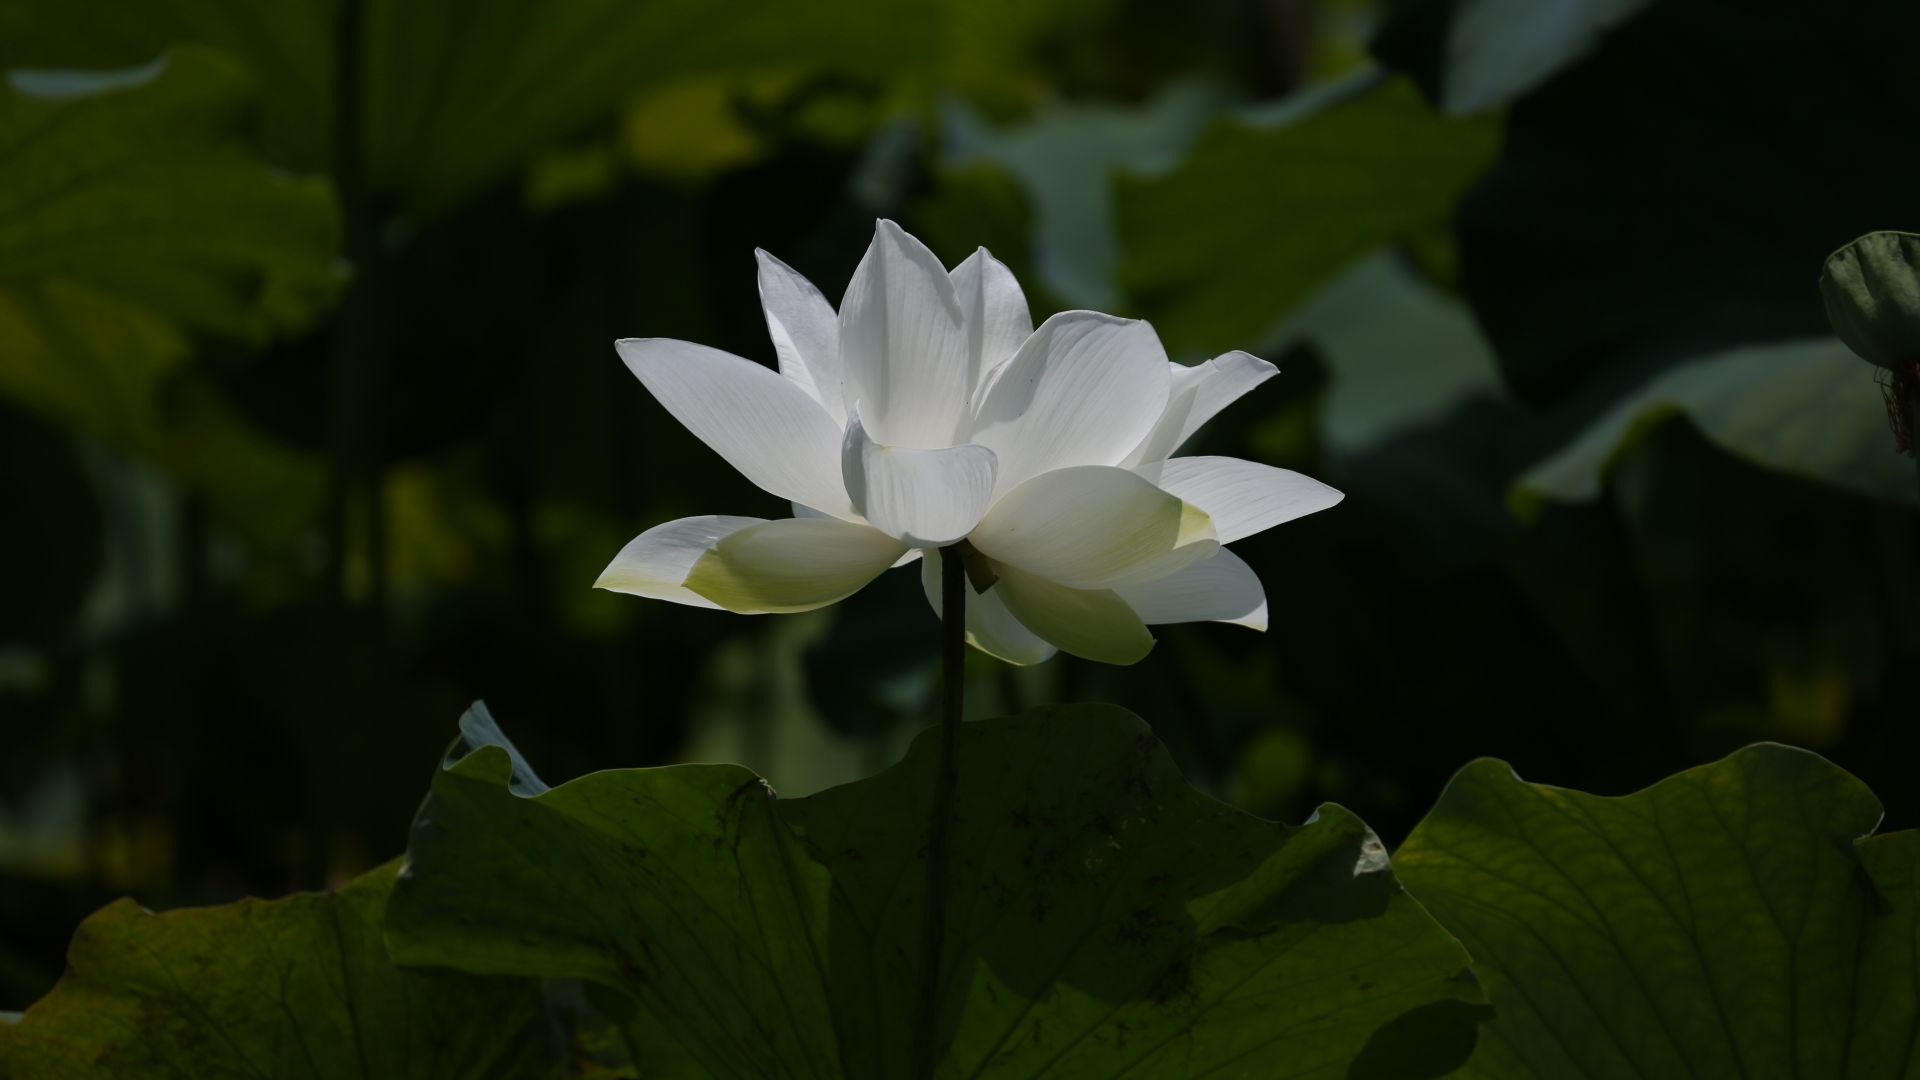 Hoa sen trắng: Tận hưởng một vẻ đẹp độc đáo của hoa sen trắng cùng với không gian nghệ thuật độc đáo. Hơi thở dịu nhẹ của thiên nhiên và màu trắng tinh khôi của hoa sen sẽ khiến cho bạn tạm quên đi cuộc sống bộn bề để thưởng thức khoảnh khắc thanh tịnh và thư giãn.